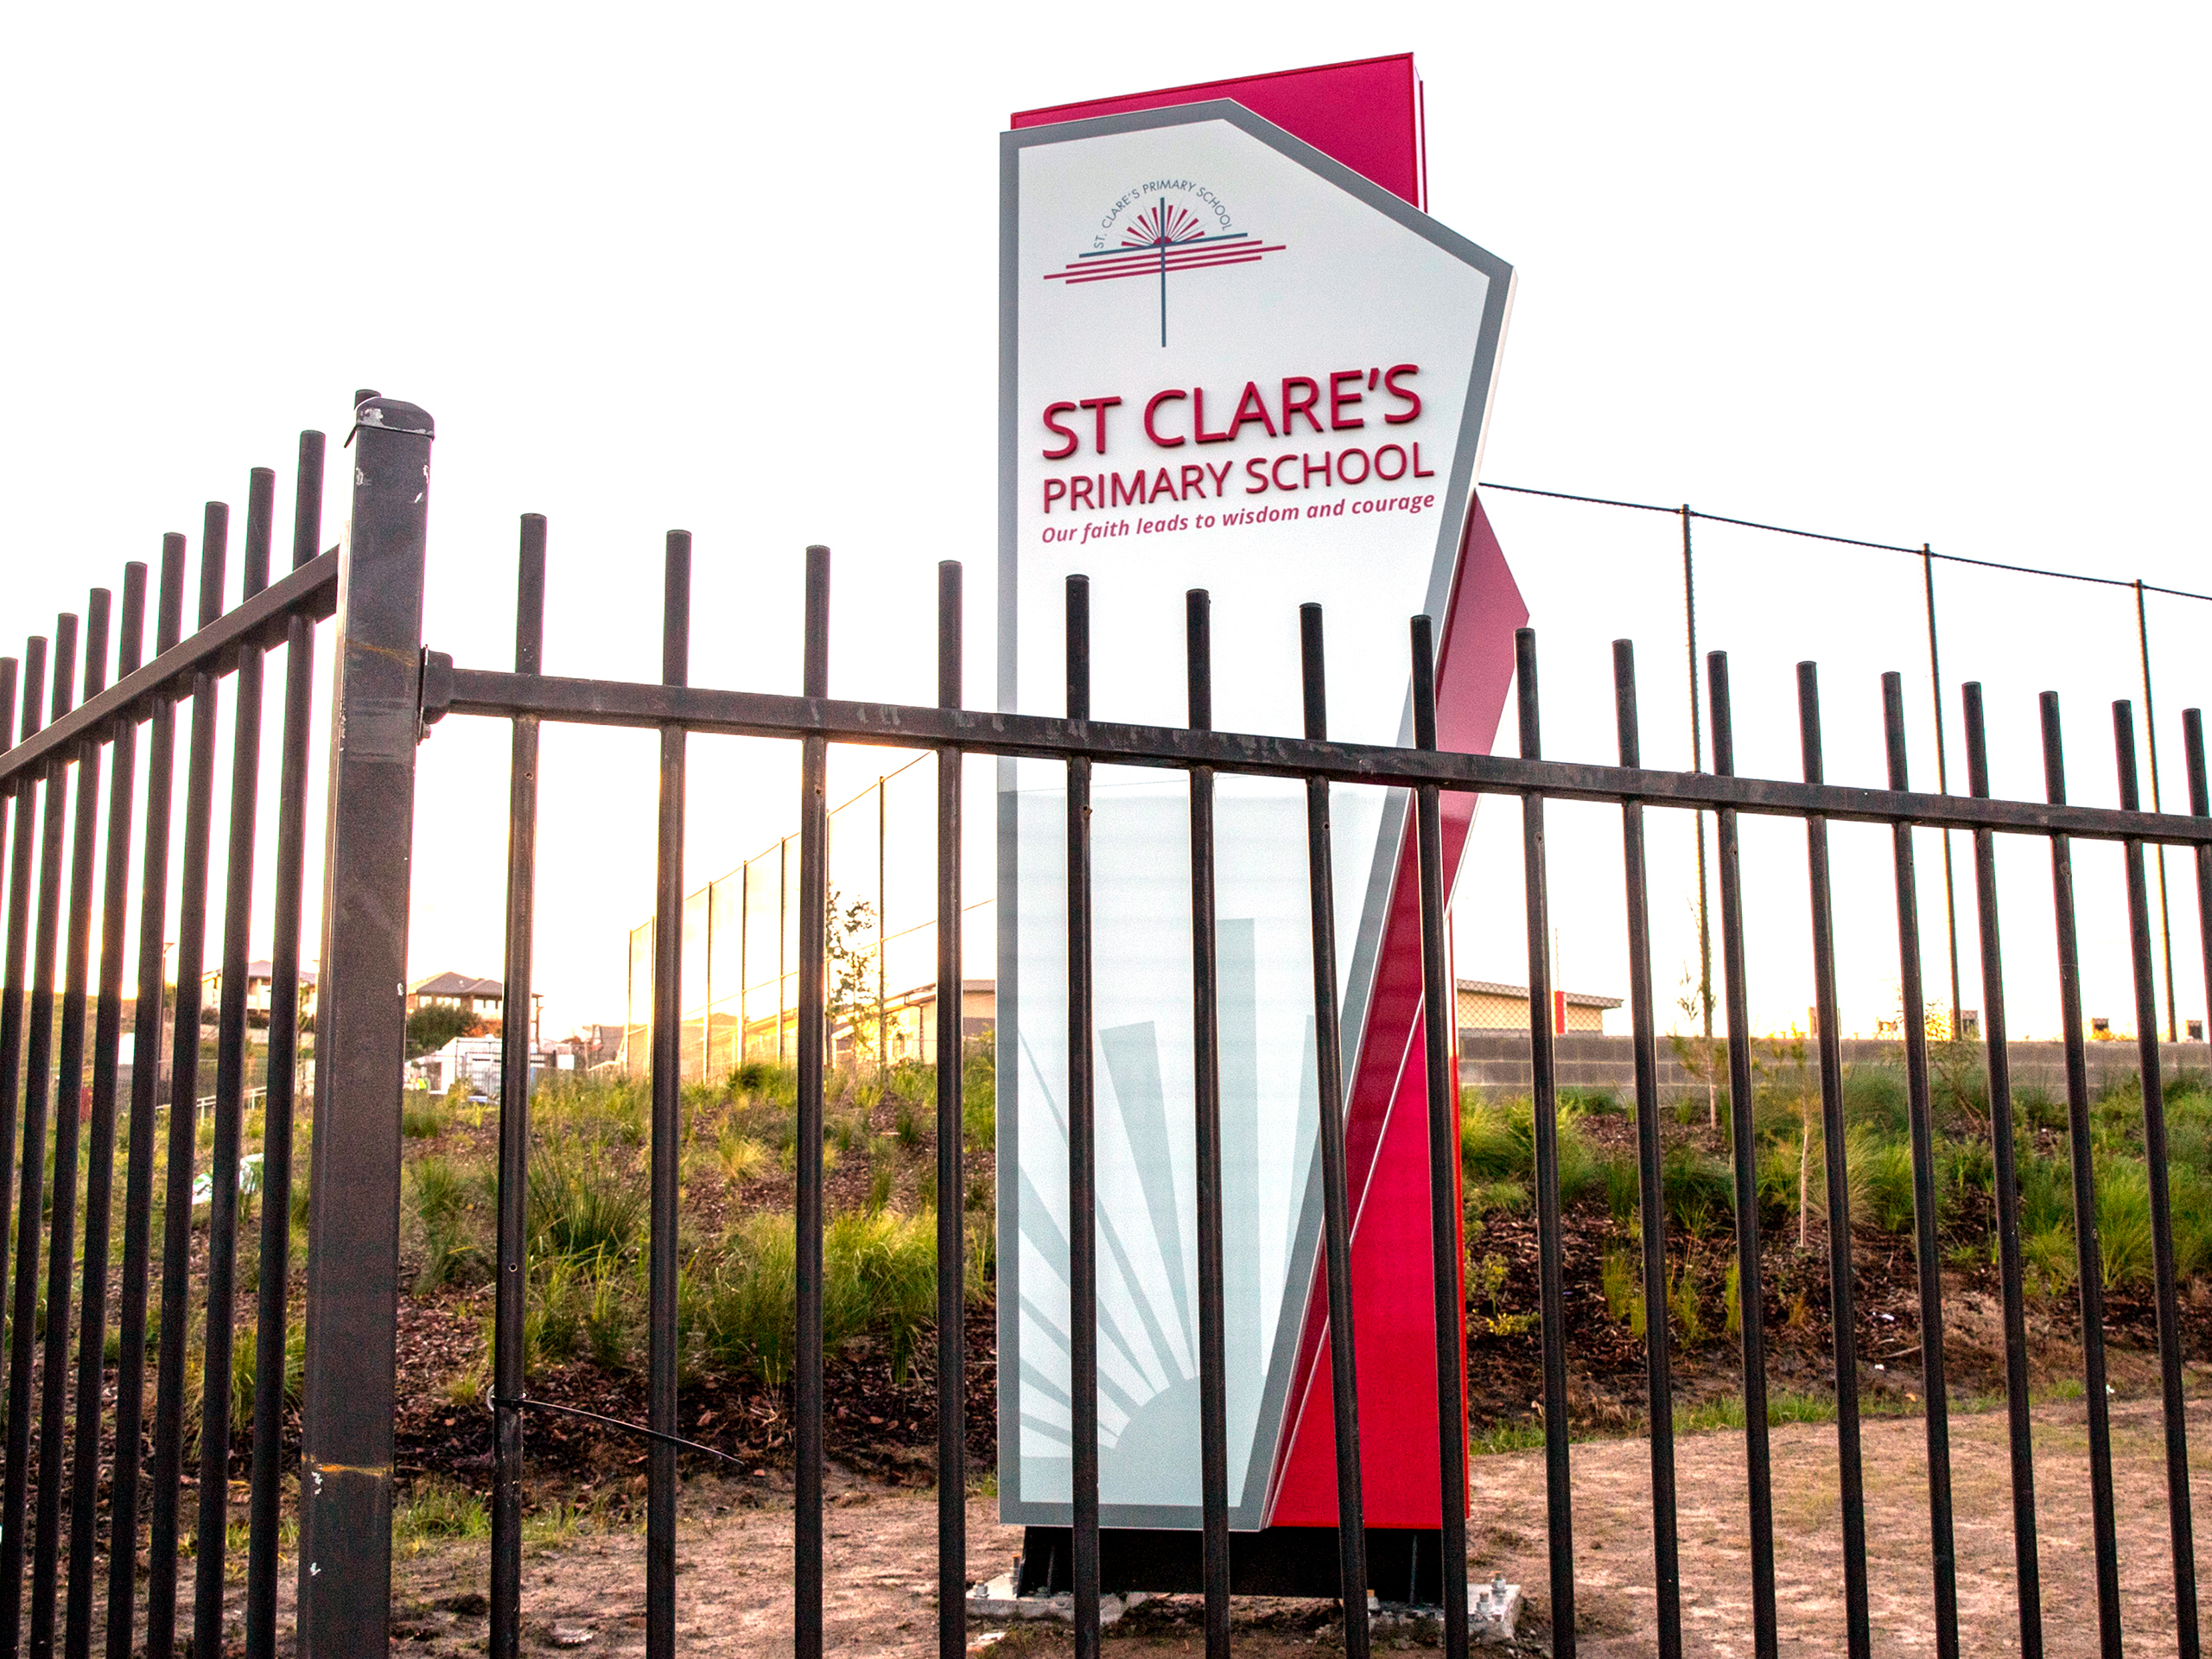 St. Clare’s Primary School